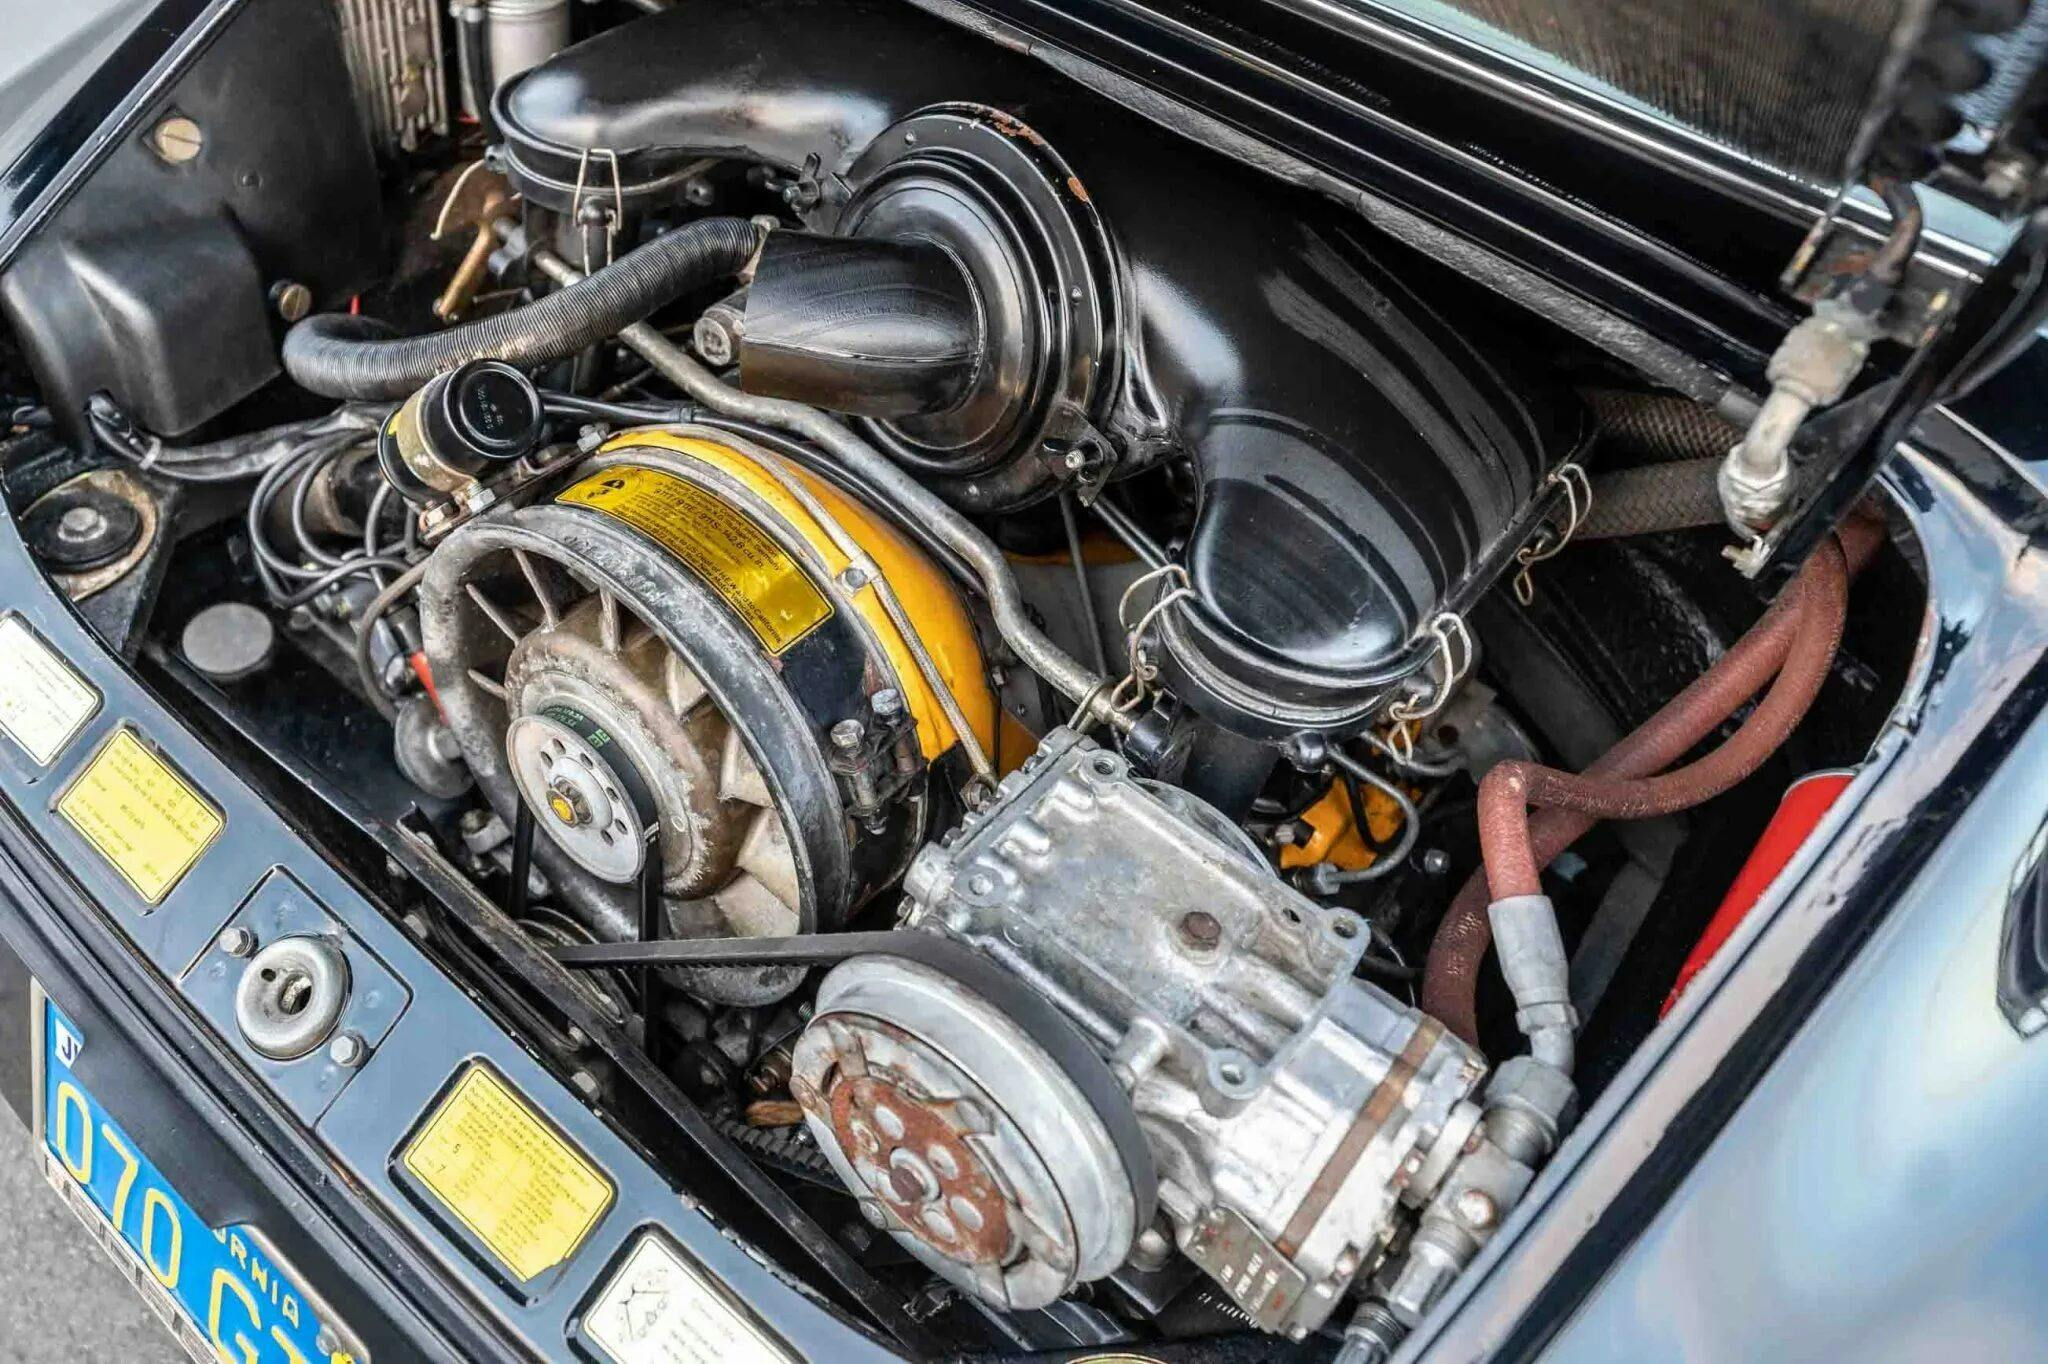 Ewan McGregor 1972 Porsche 911T Targa engine bay high angle